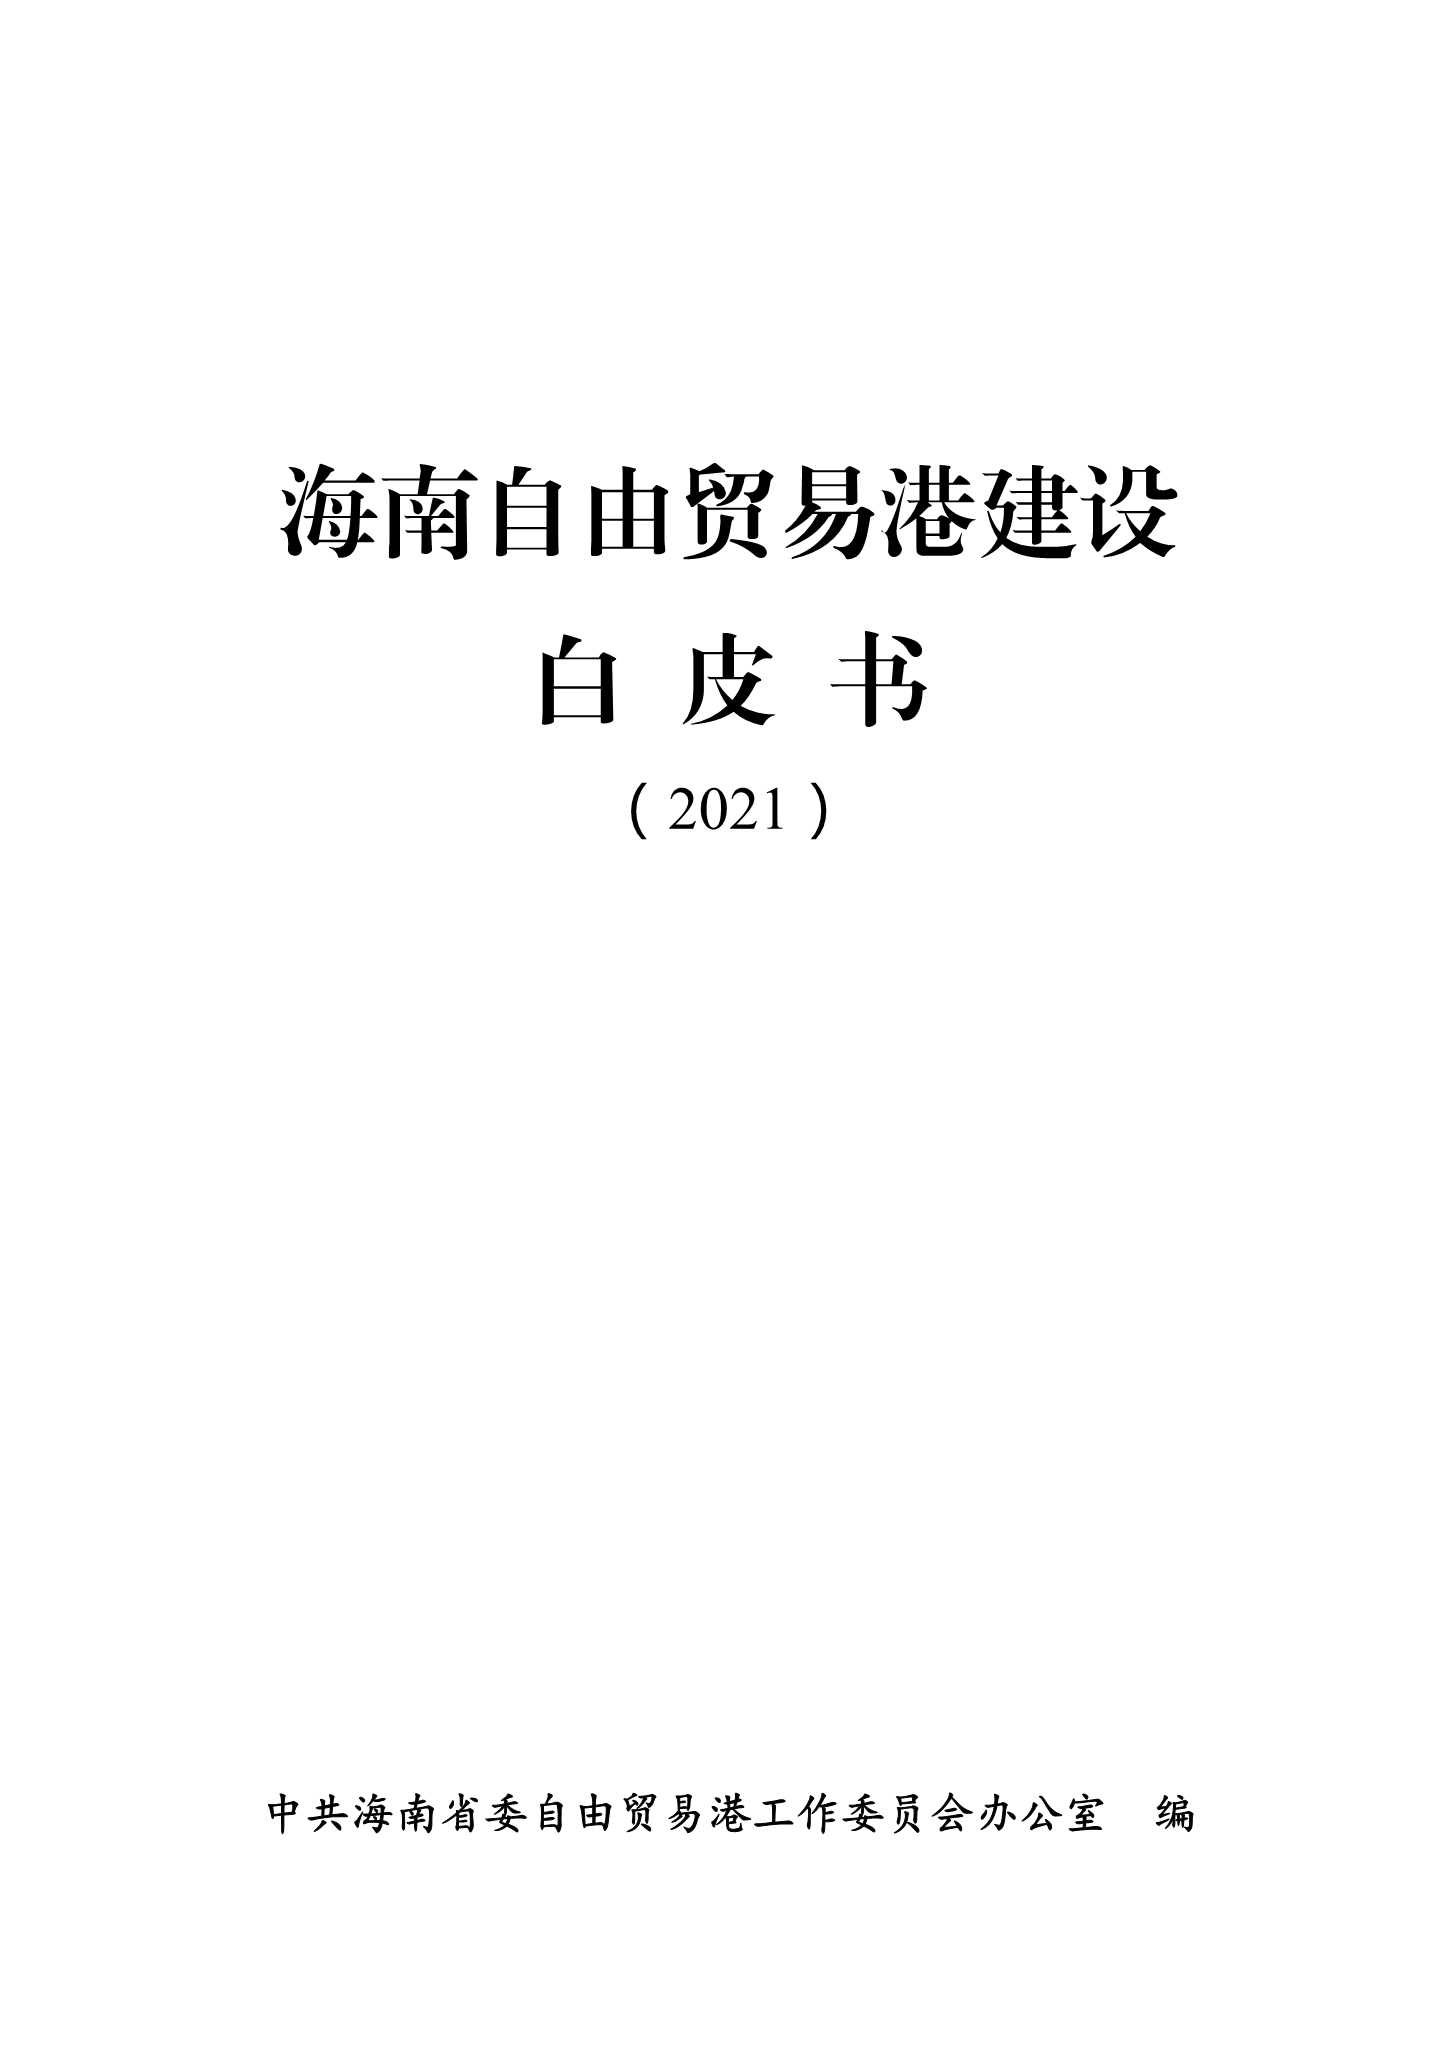 中共海南省委-海南自由贸易港建设白皮书-2021.06-152页